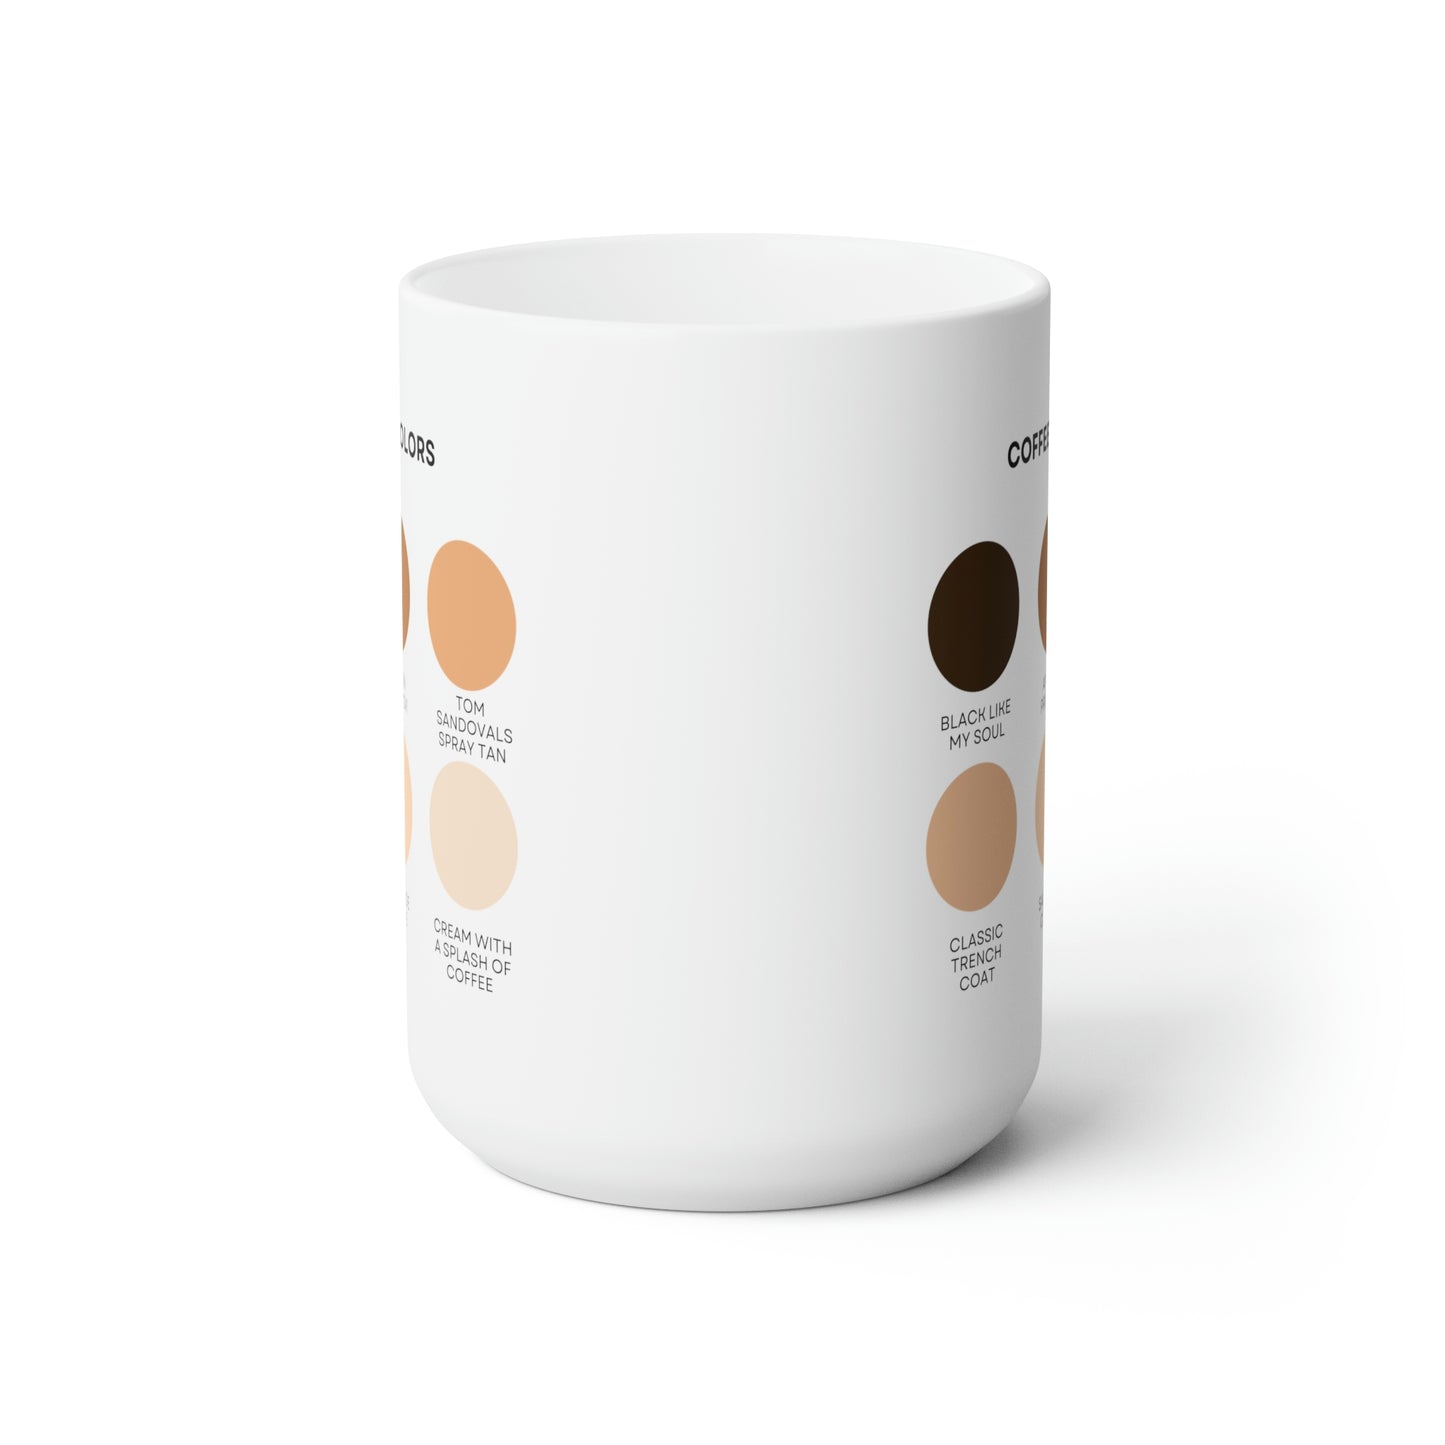 Coffee Colors Ceramic Mug 15oz